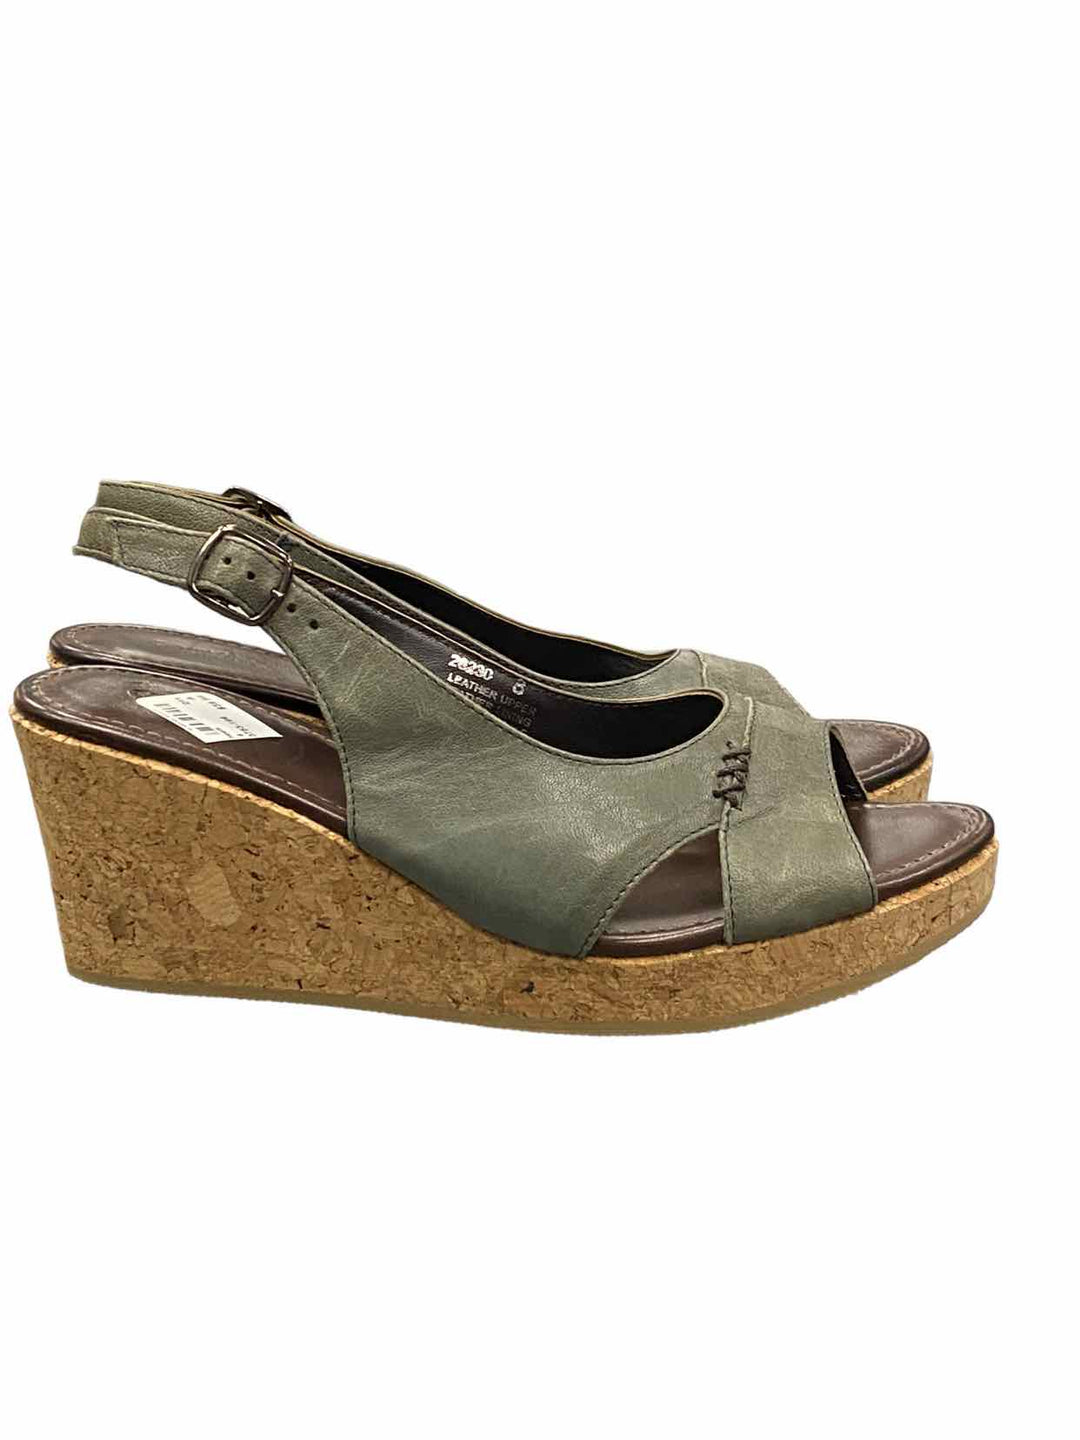 Garnet Hill Shoe Size 8 Green Leather Open Toe Heels